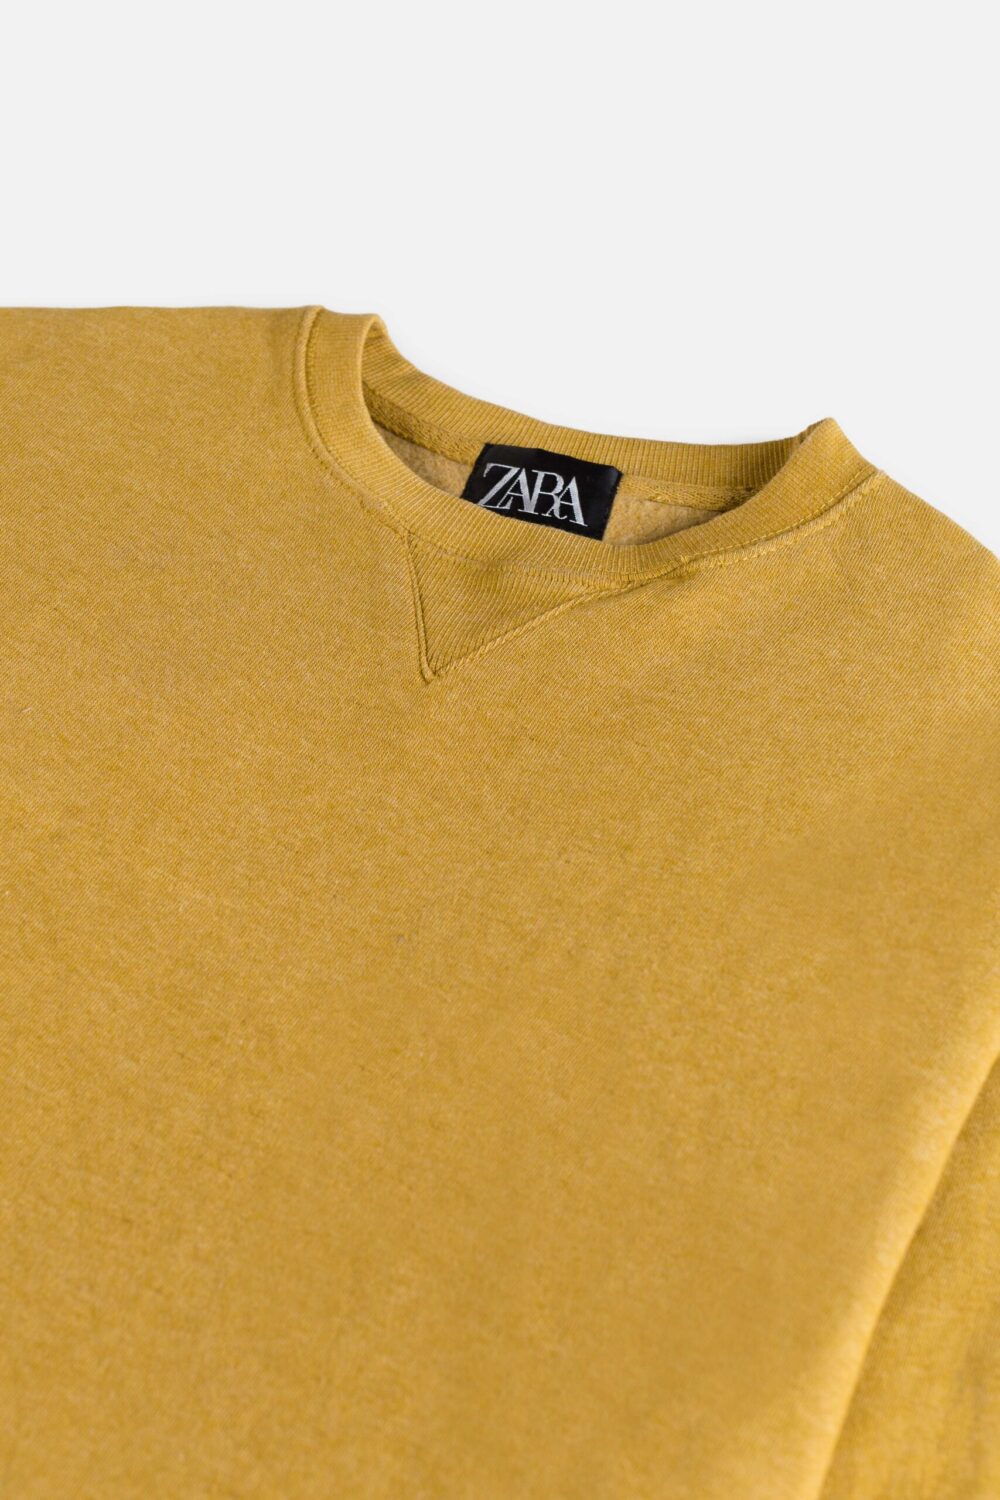 ZR Premium Fleece Sweatshirt – Mustard